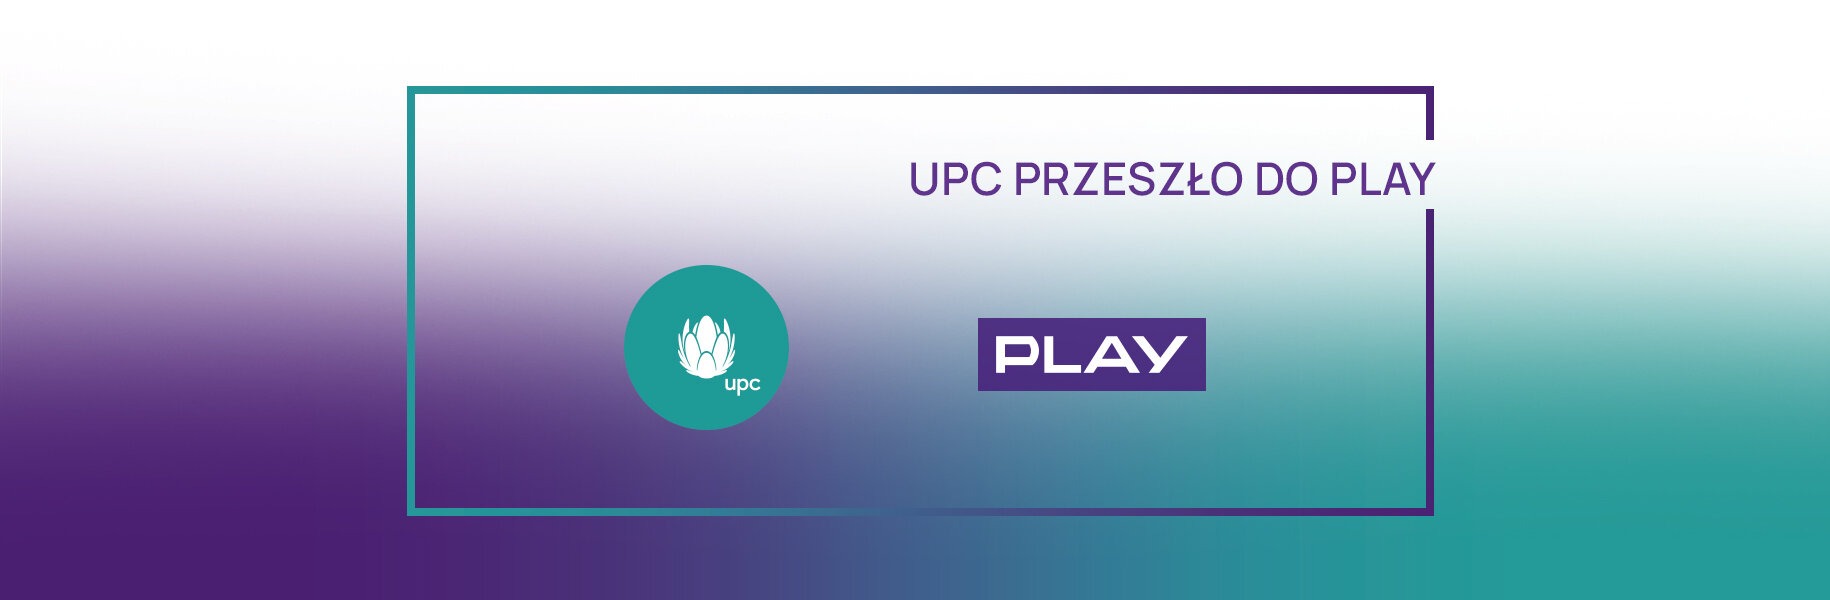 UPC i Play